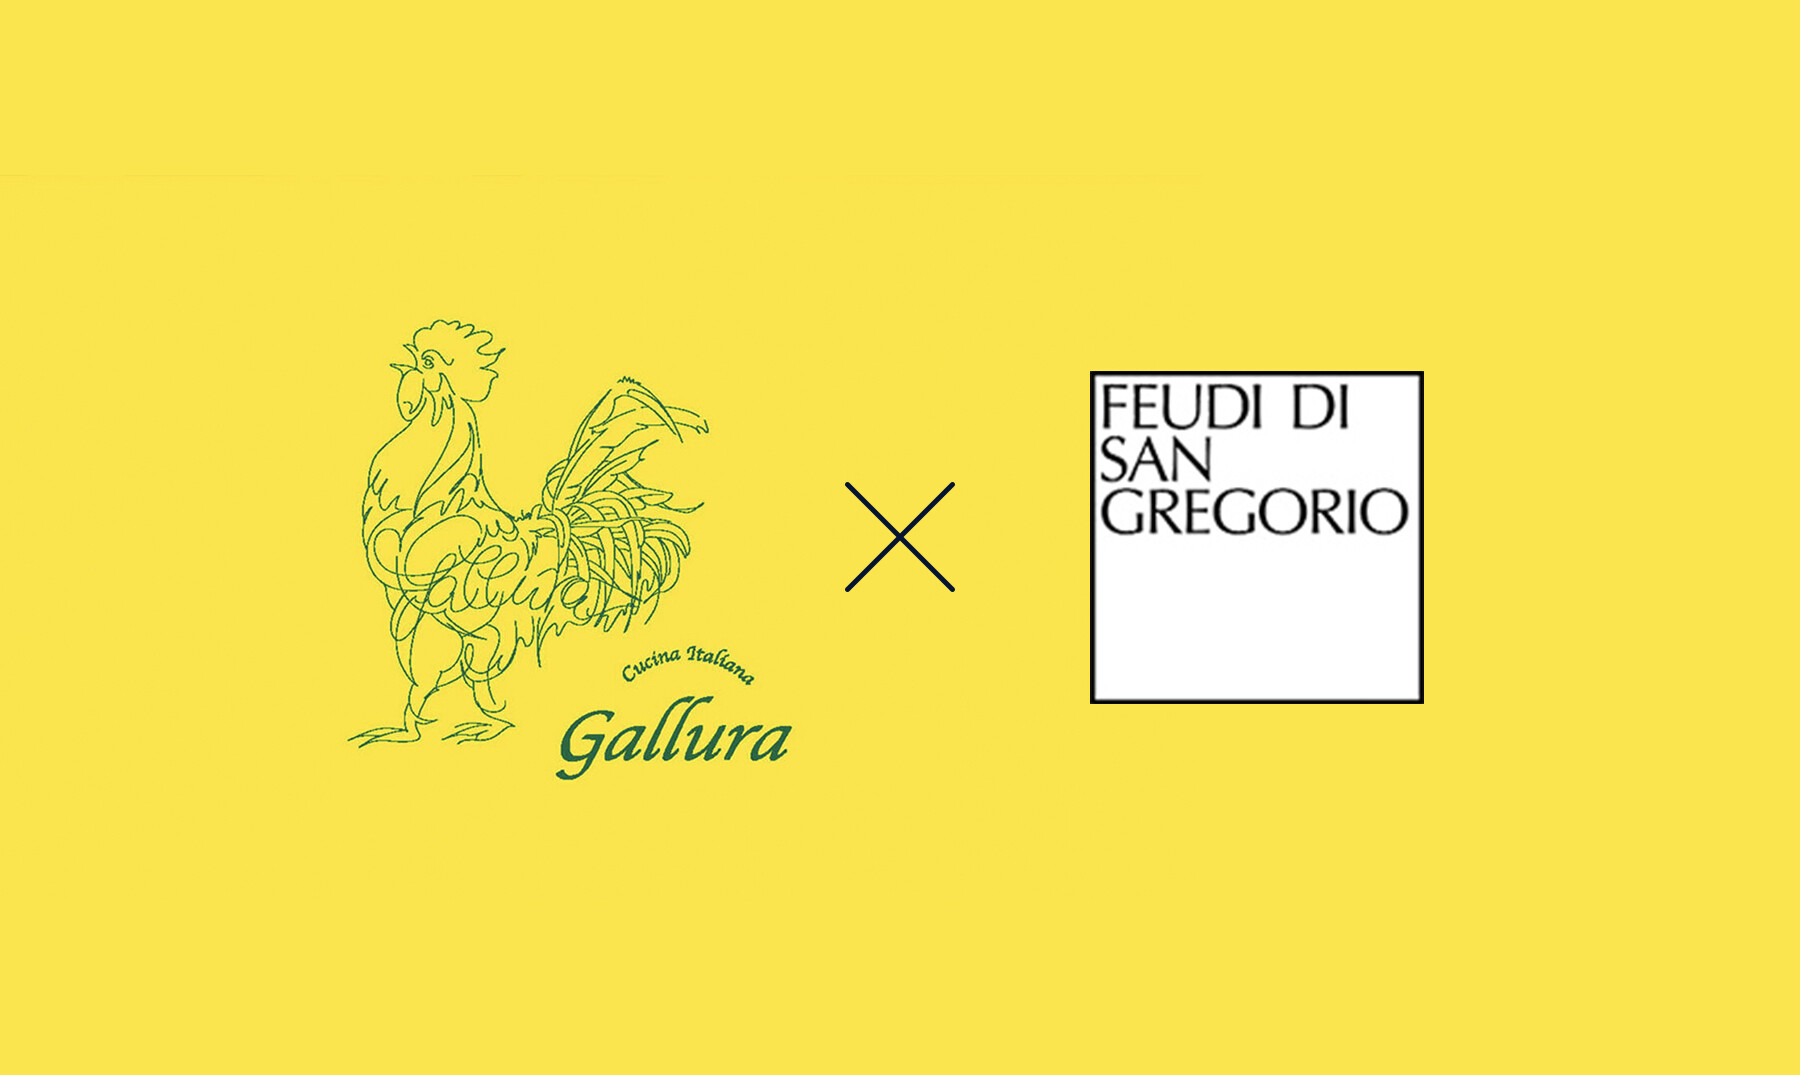 【受付終了】Cucina Italiana Gallura × フェウディ・ディ・サン・グレゴリオのカバー画像